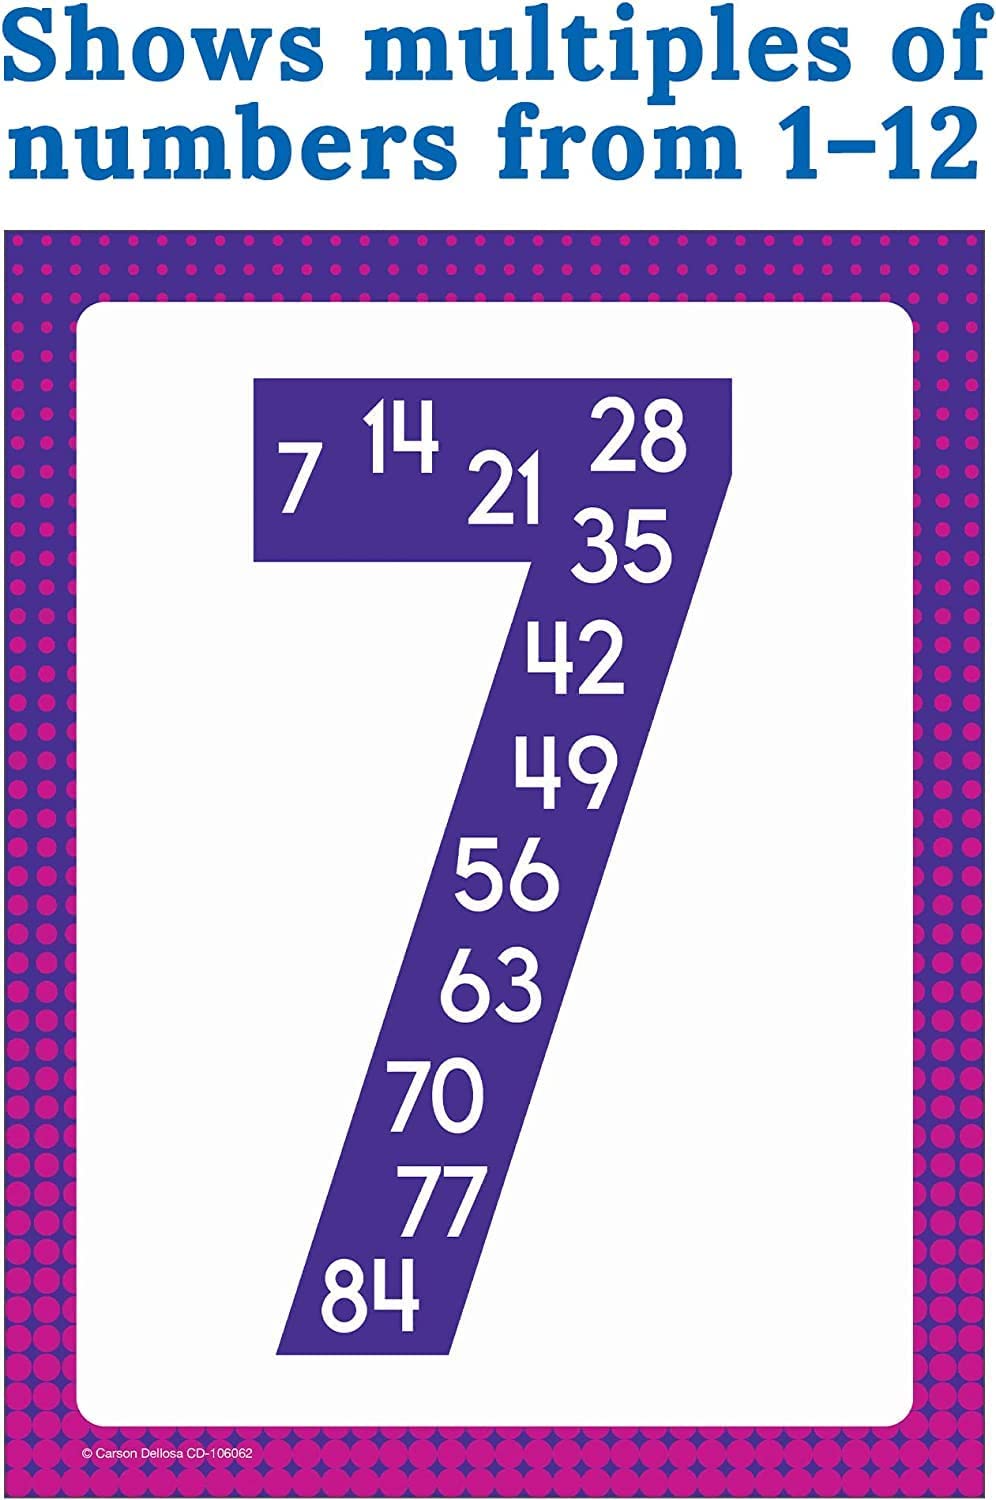 بوسترات رياضيات متعددة تتضمن 12 بوستر رياضيات بتصميم مضاعفات الأرقام 1-12